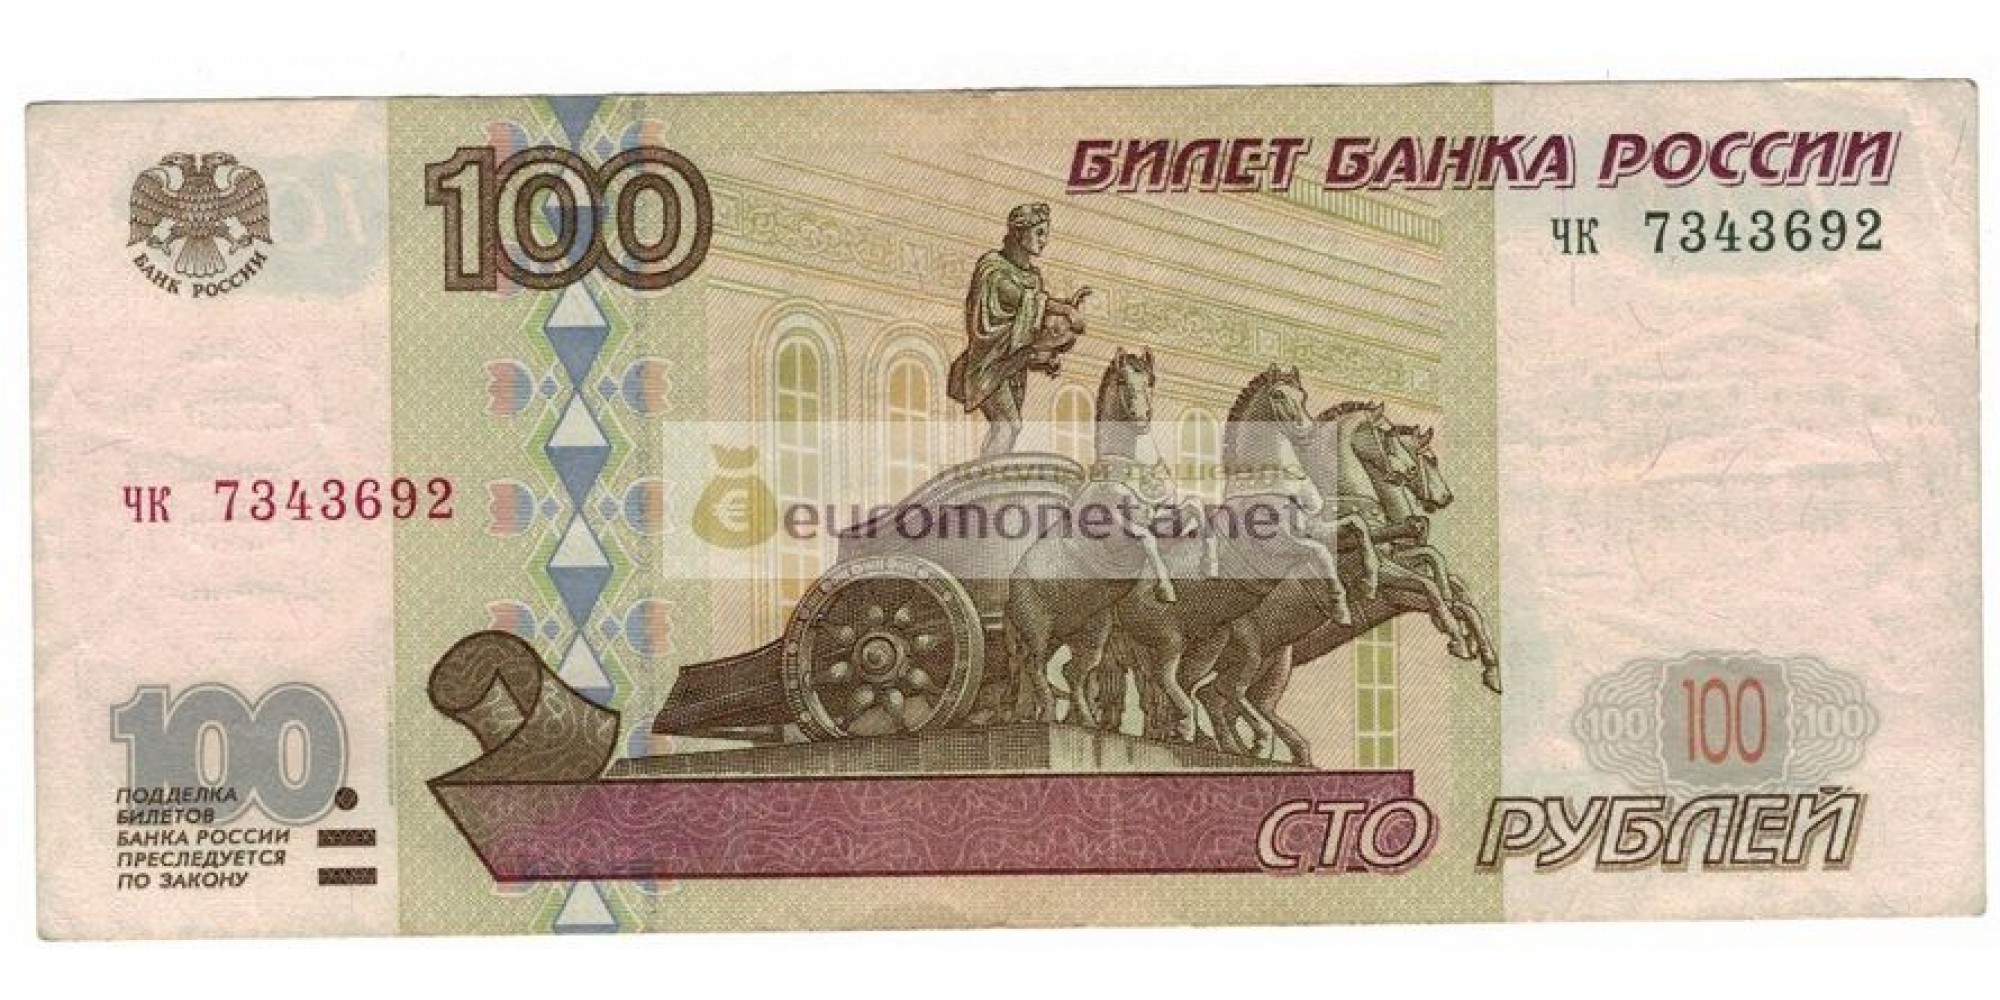 Россия 100 рублей 1997 год модификация 2001 год серия чк 7343692